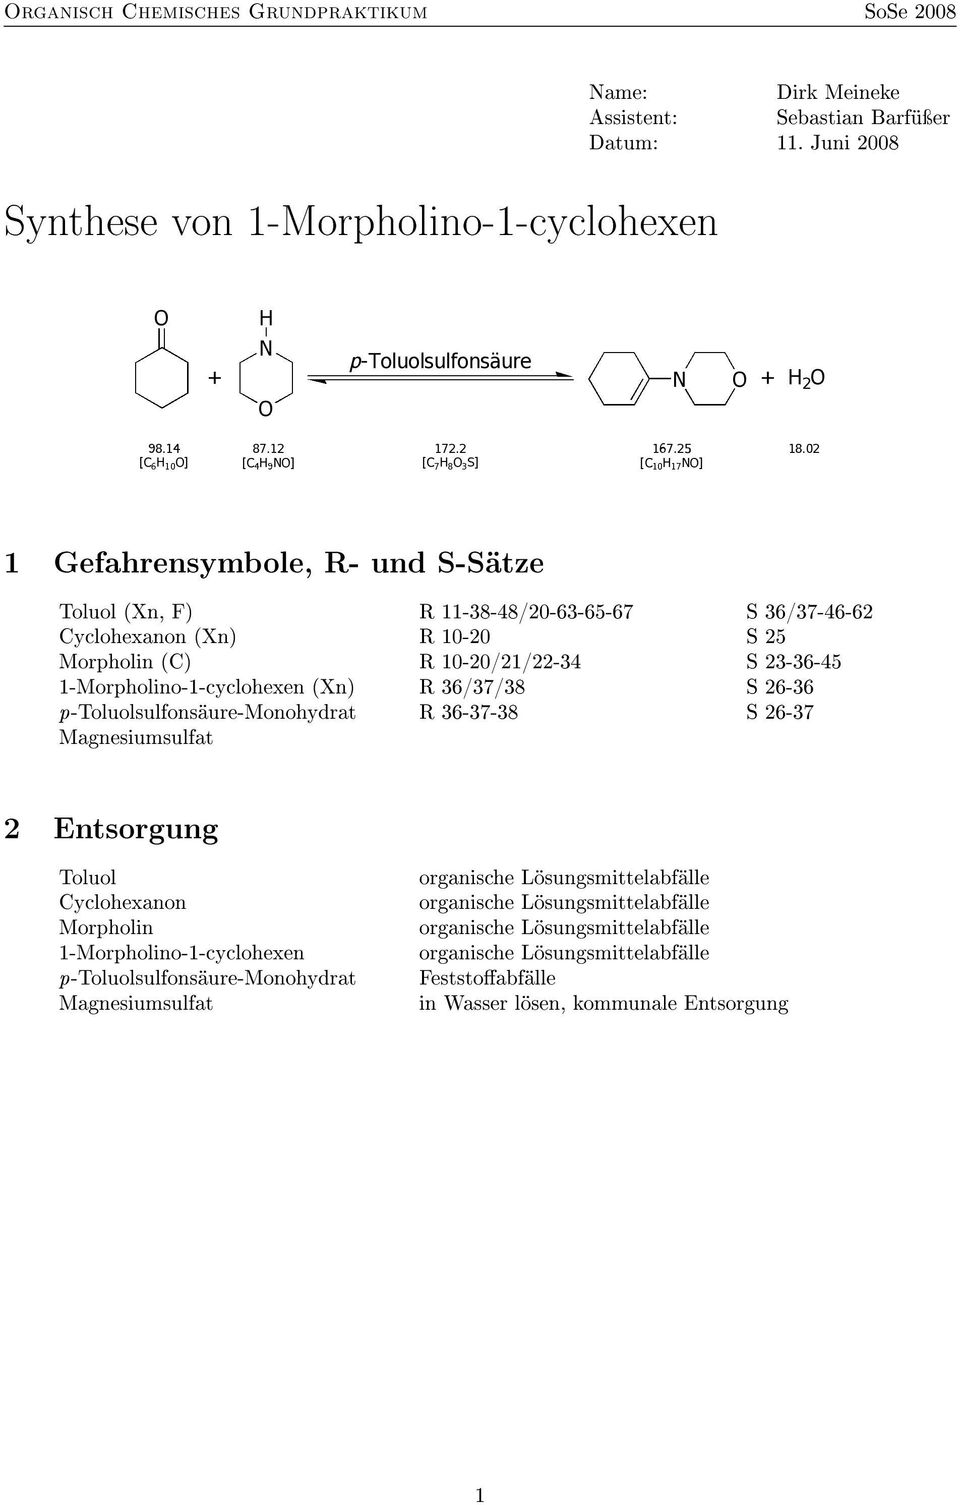 Cyclohexanon (Xn) R 10-20 S 25 Morpholin (C) R 10-20/21/22-34 S 23-36-45 1-Morpholino-1-cyclohexen (Xn) R 36/37/38 S 26-36